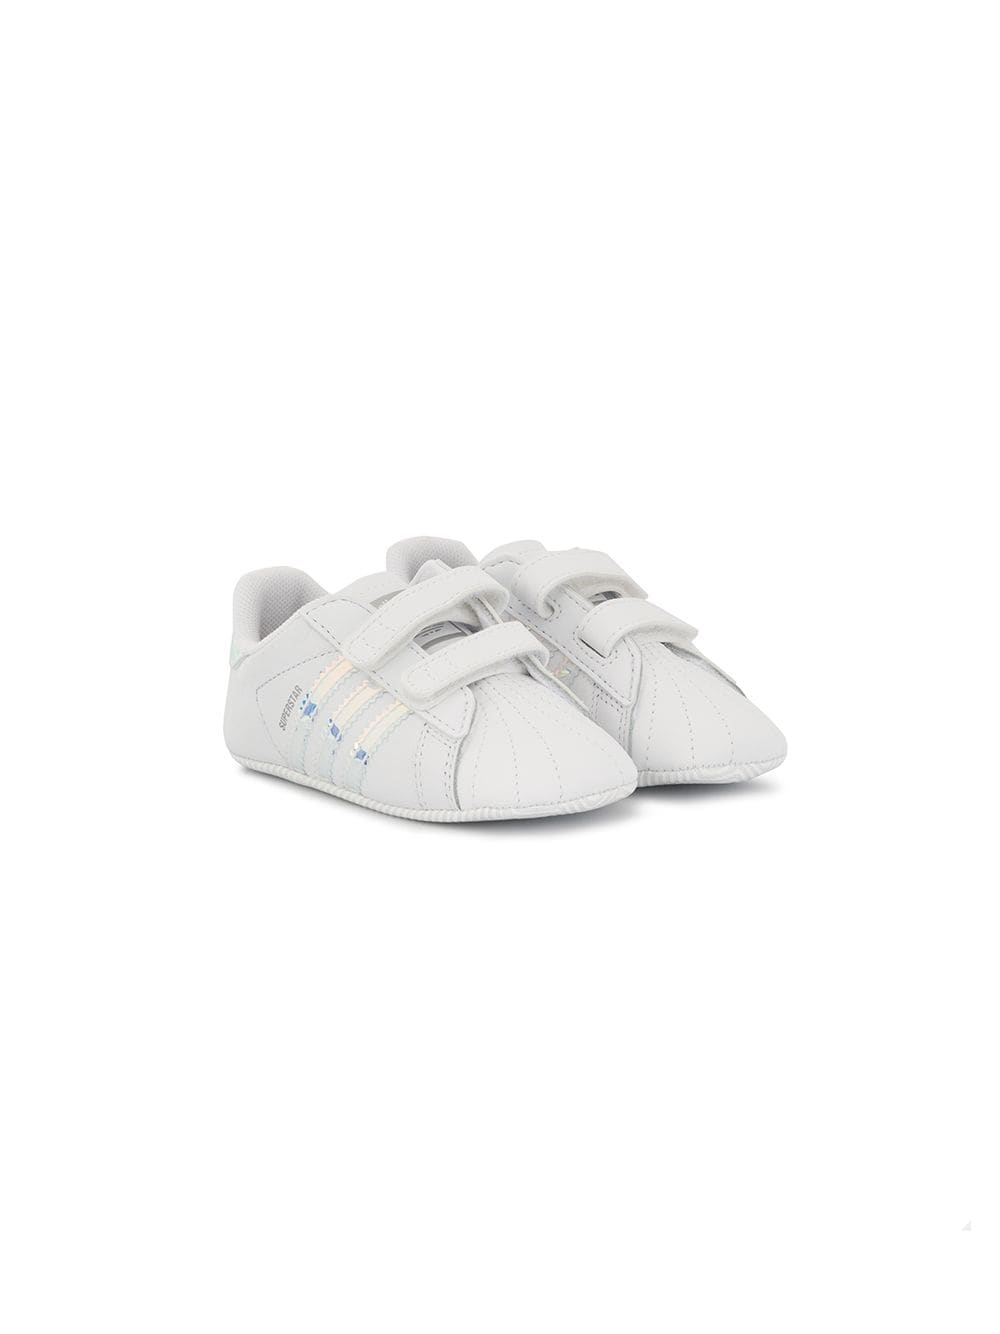 adidas Kids Superstar crib shoes - White von adidas Kids